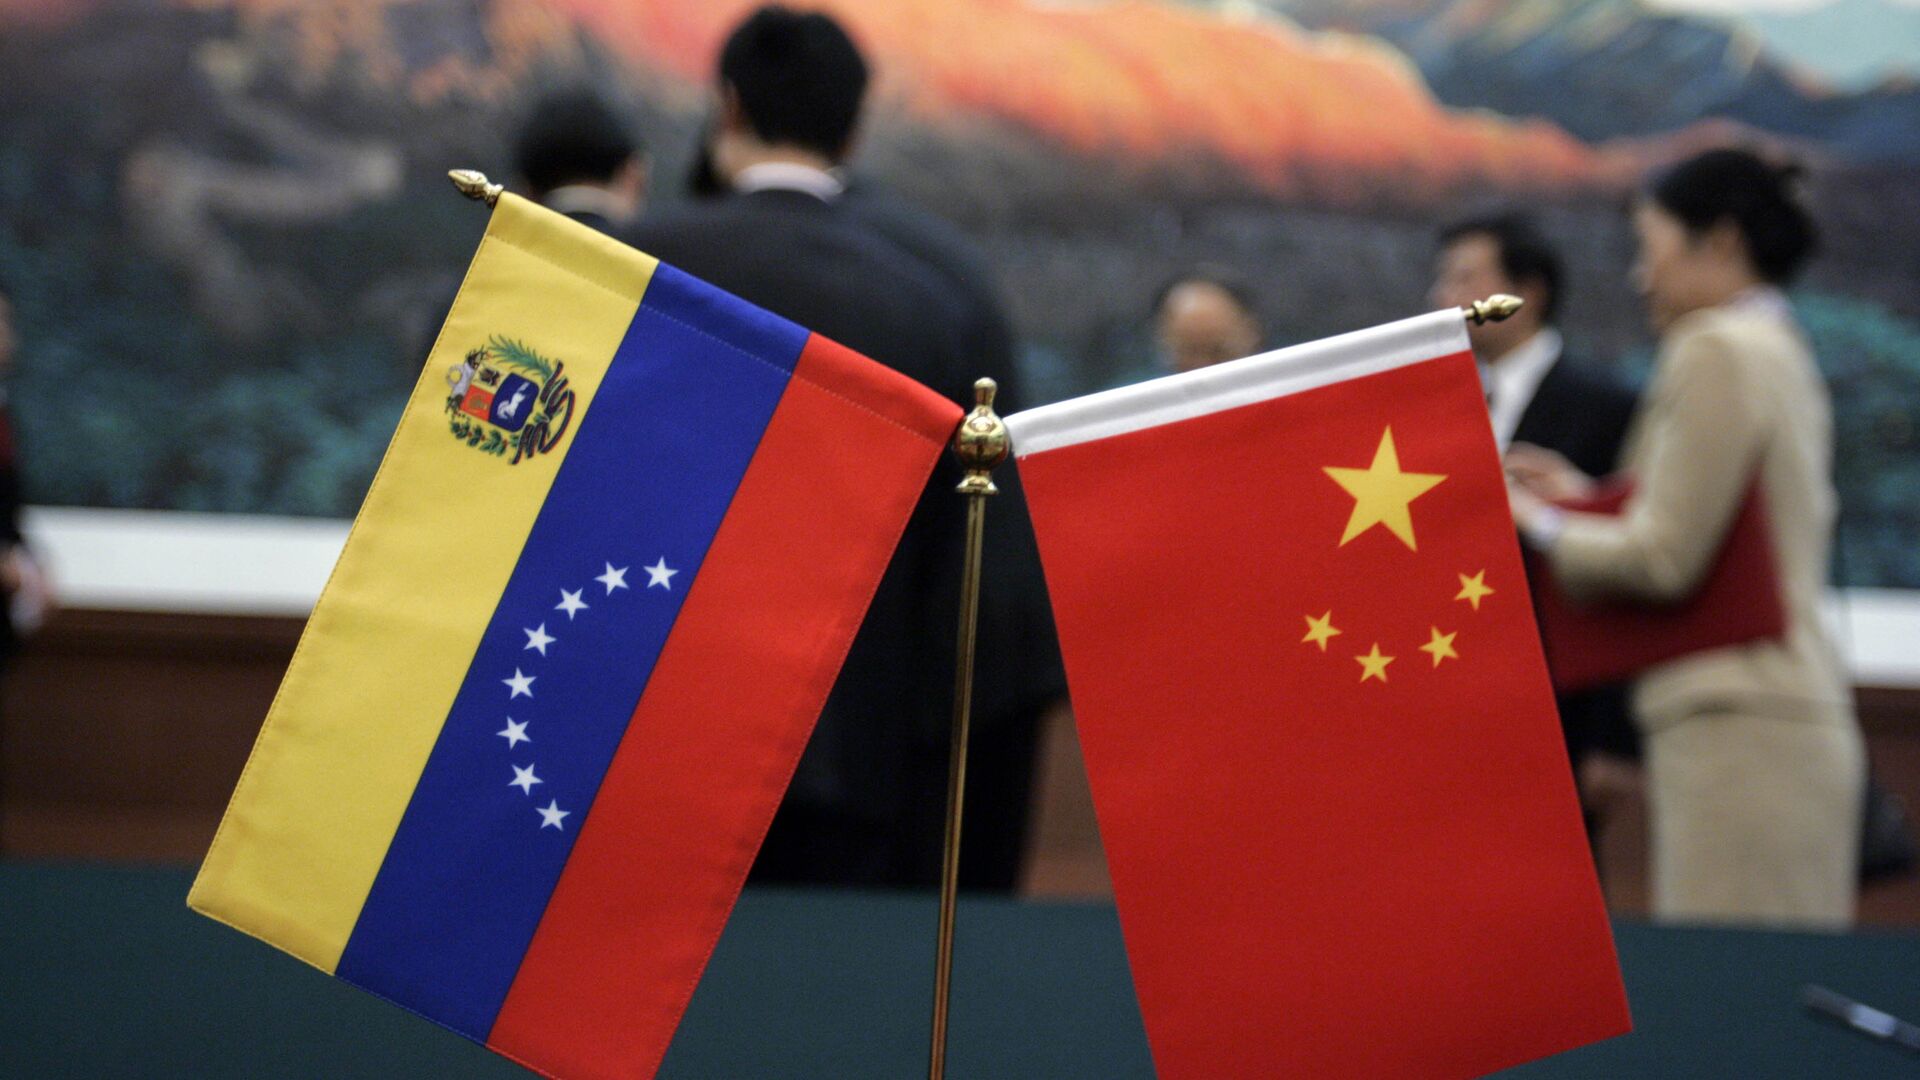 Banderas de Venezuela y China - Sputnik Mundo, 1920, 26.08.2021